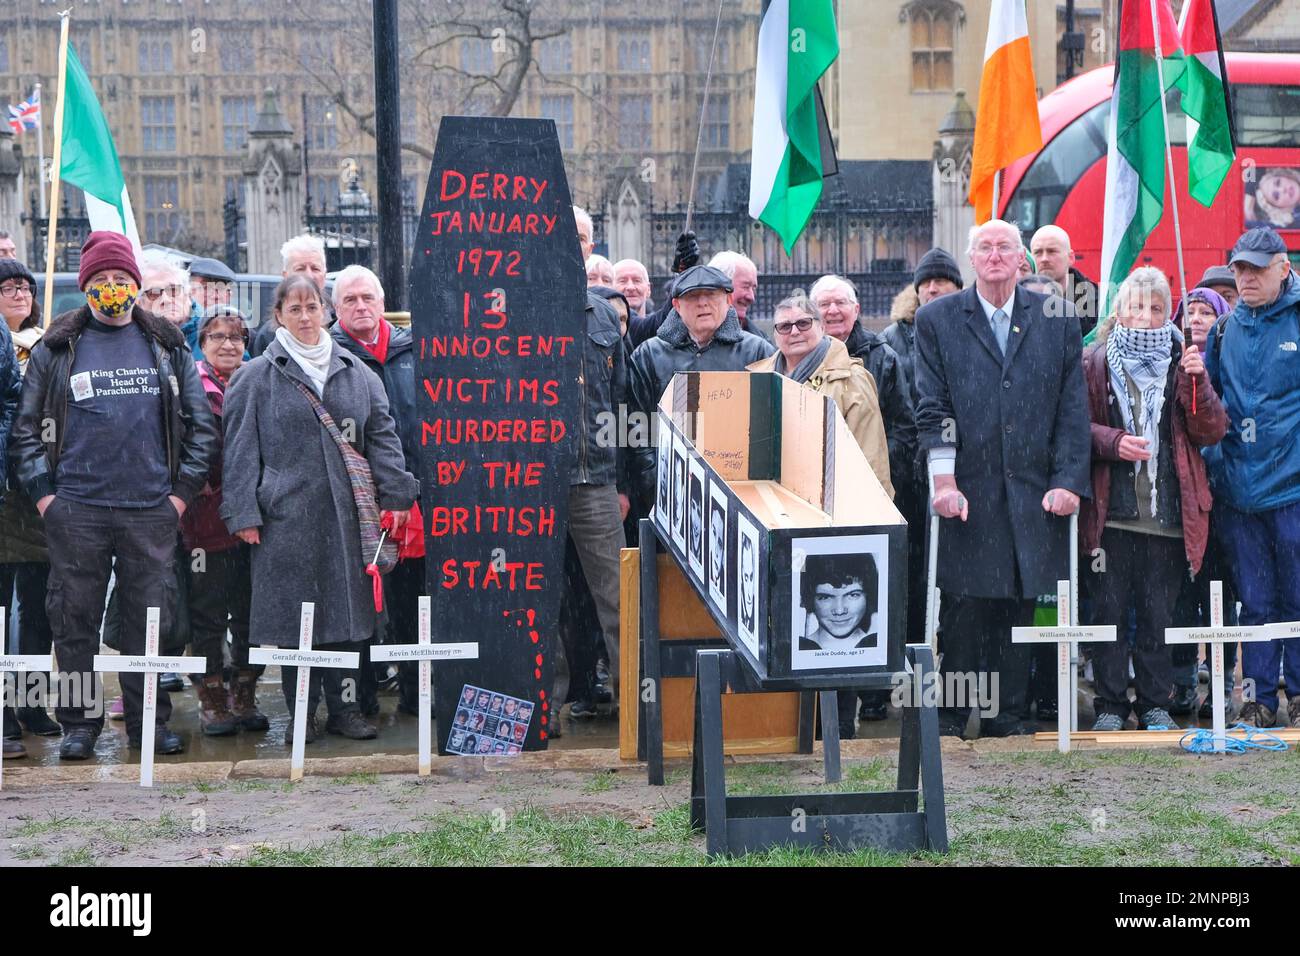 London, Großbritannien. Am Parlamentsplatz versammeln sich Aktivisten, um den Jahrestag des Bloody Sunday zu feiern, an dem 13 Zivilisten von britischen Streitkräften getötet wurden. Stockfoto